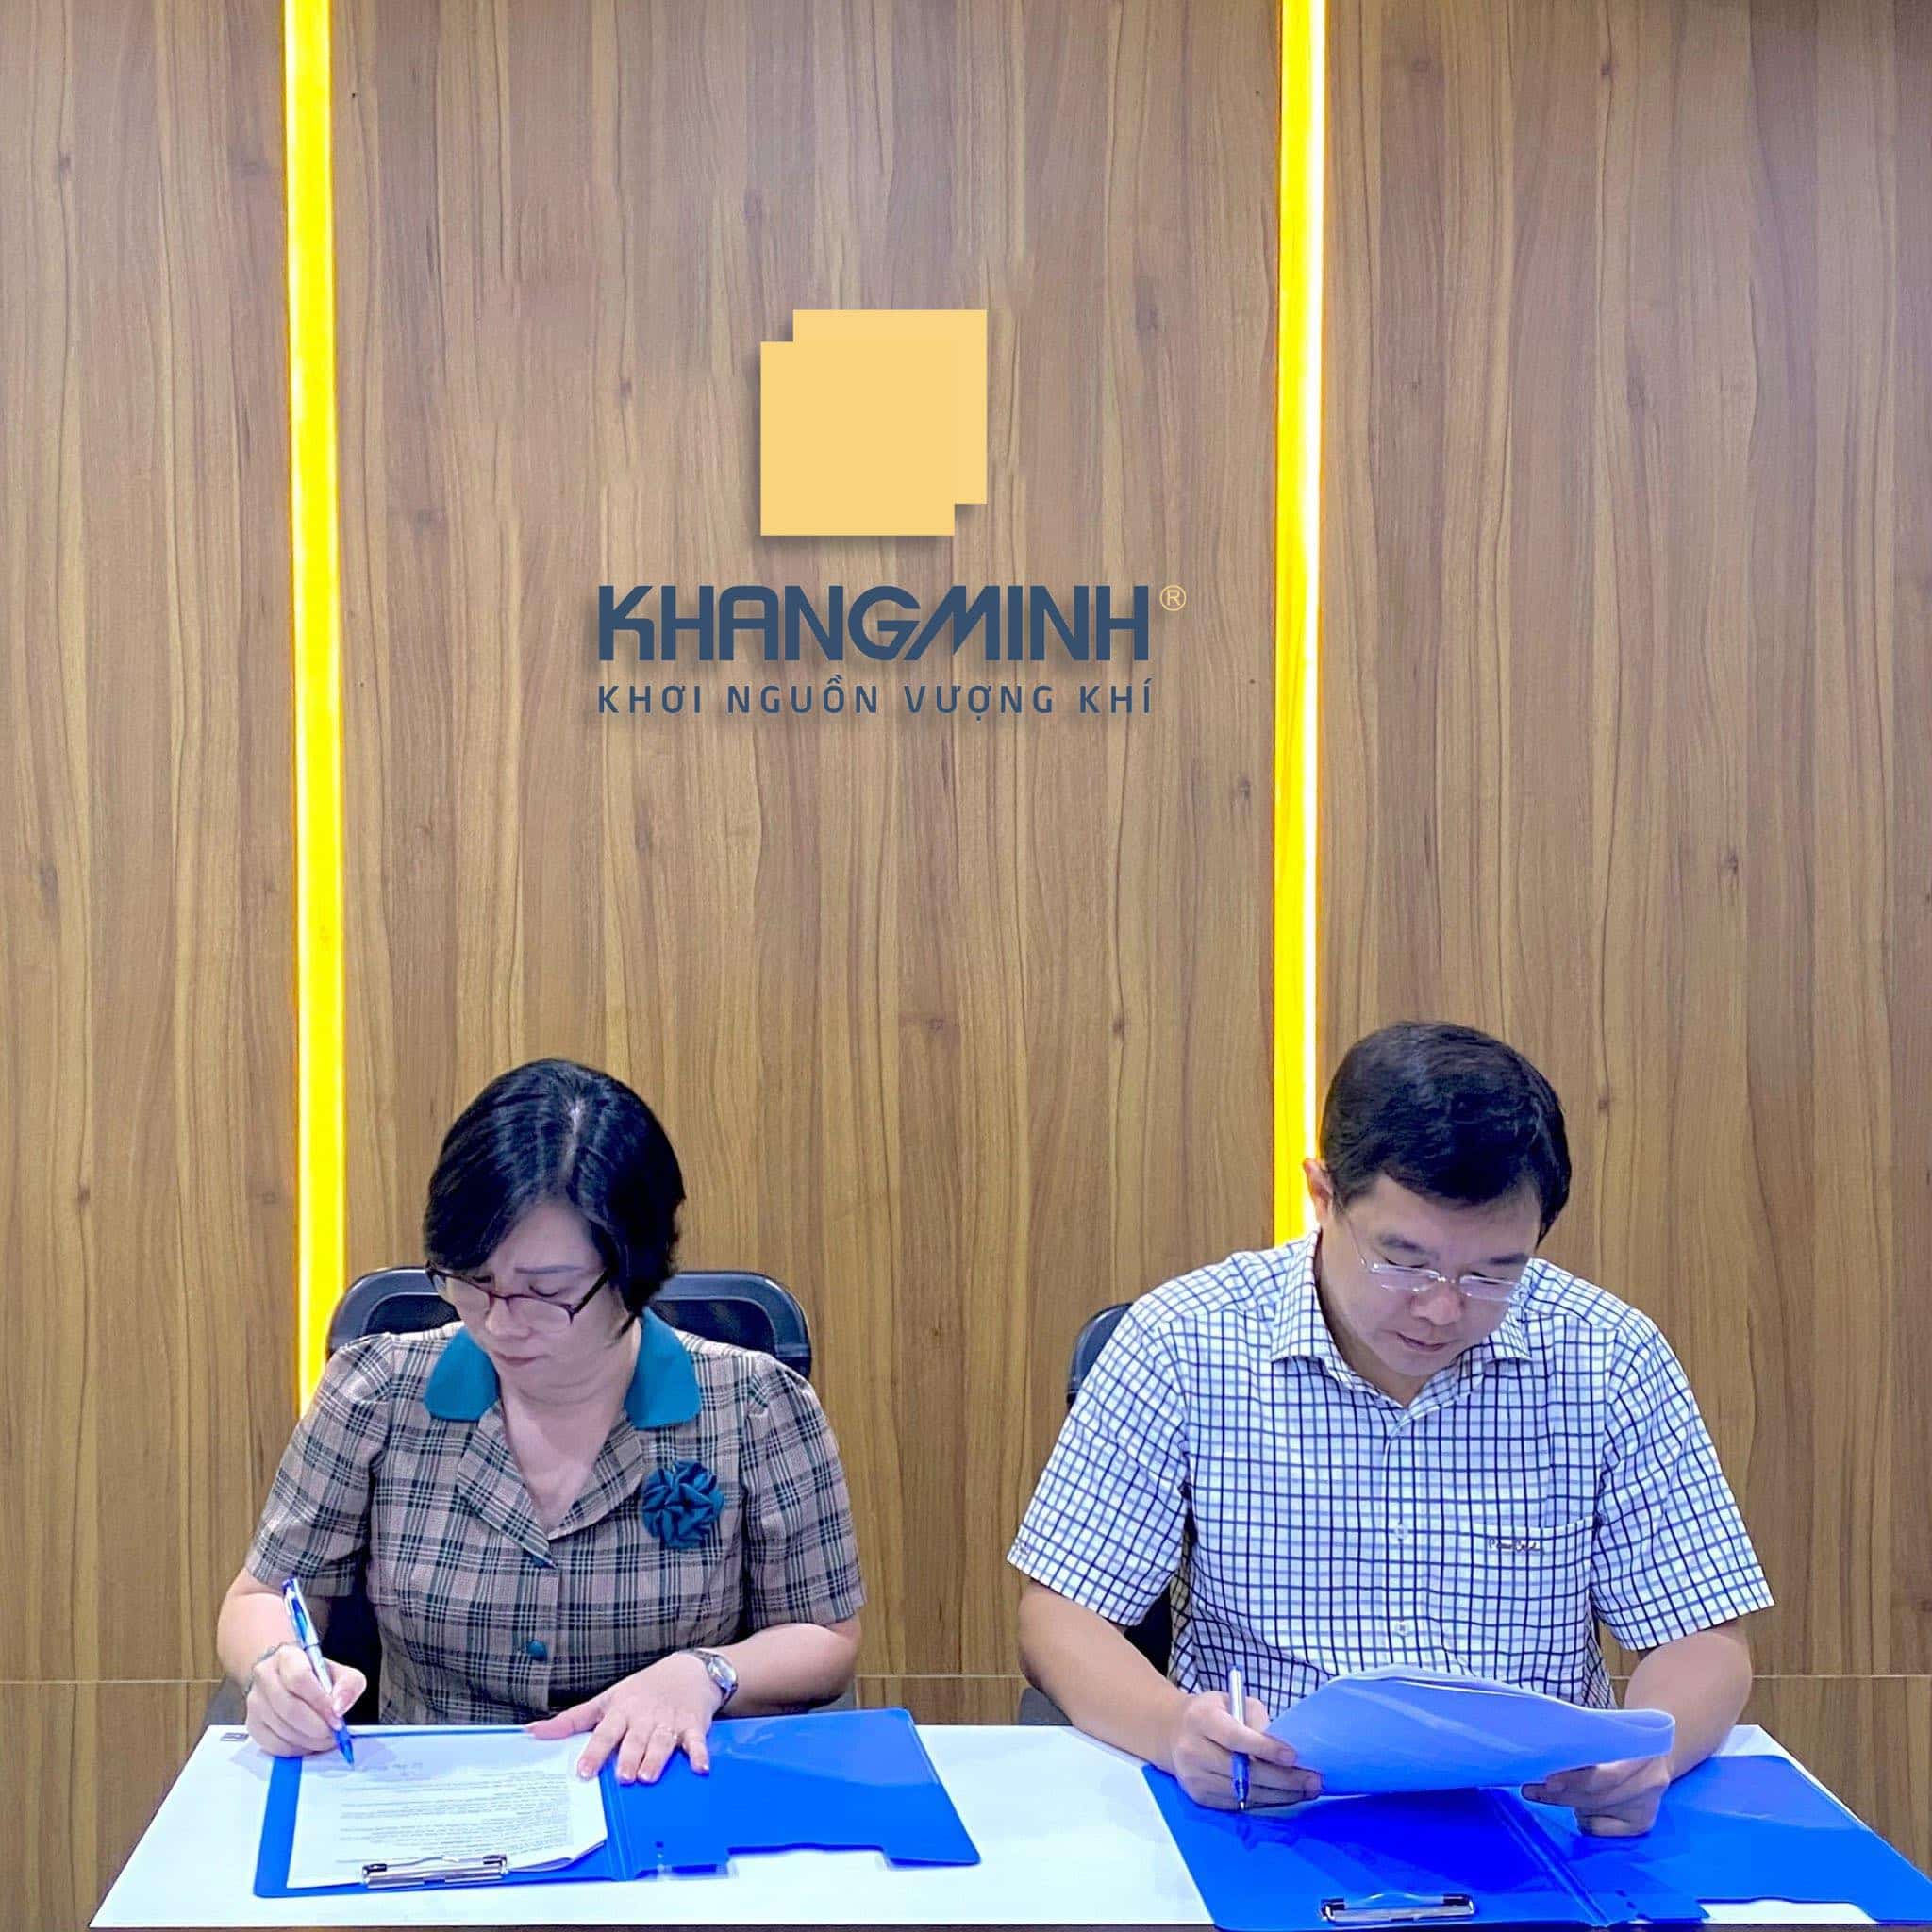 Lễ ký kết hợp tác giữa Khang Minh và Phong thủy Huyền Lê